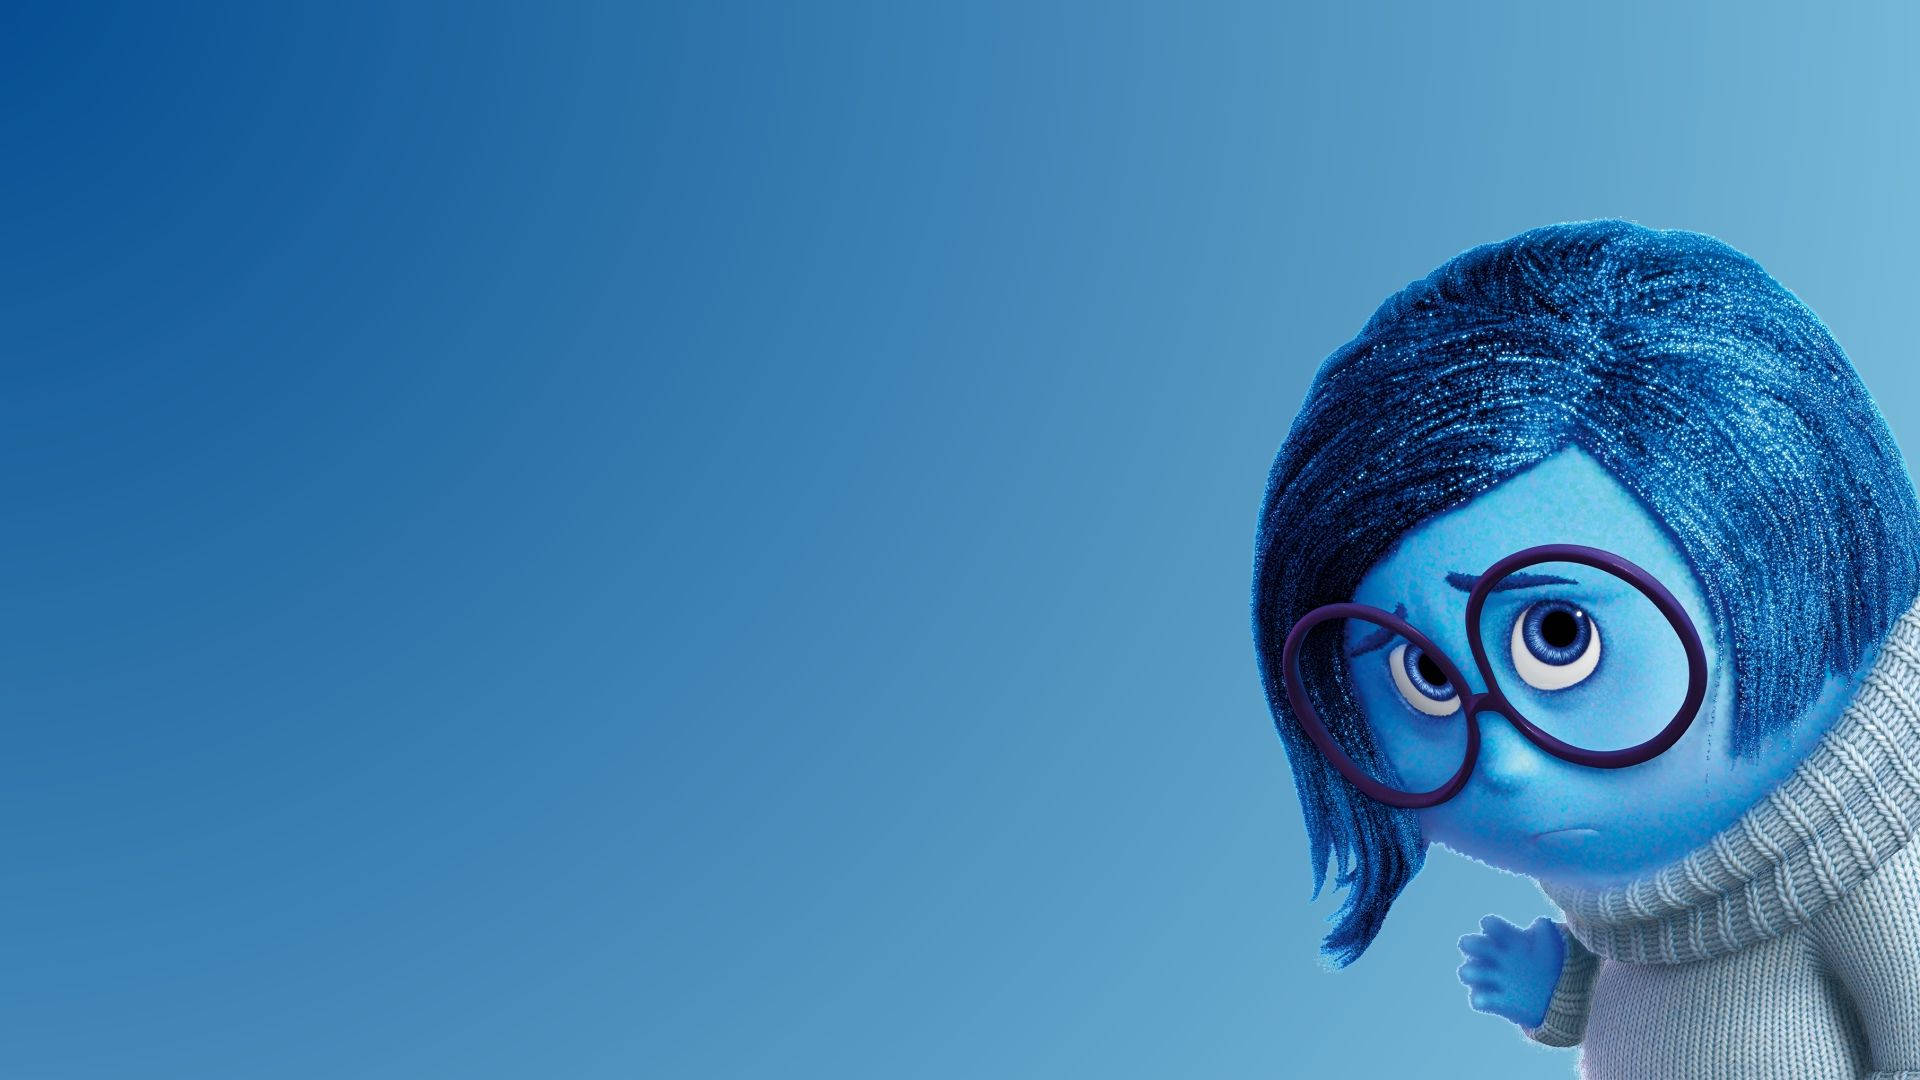 Inutiout Sadness Pixar. Wallpaper